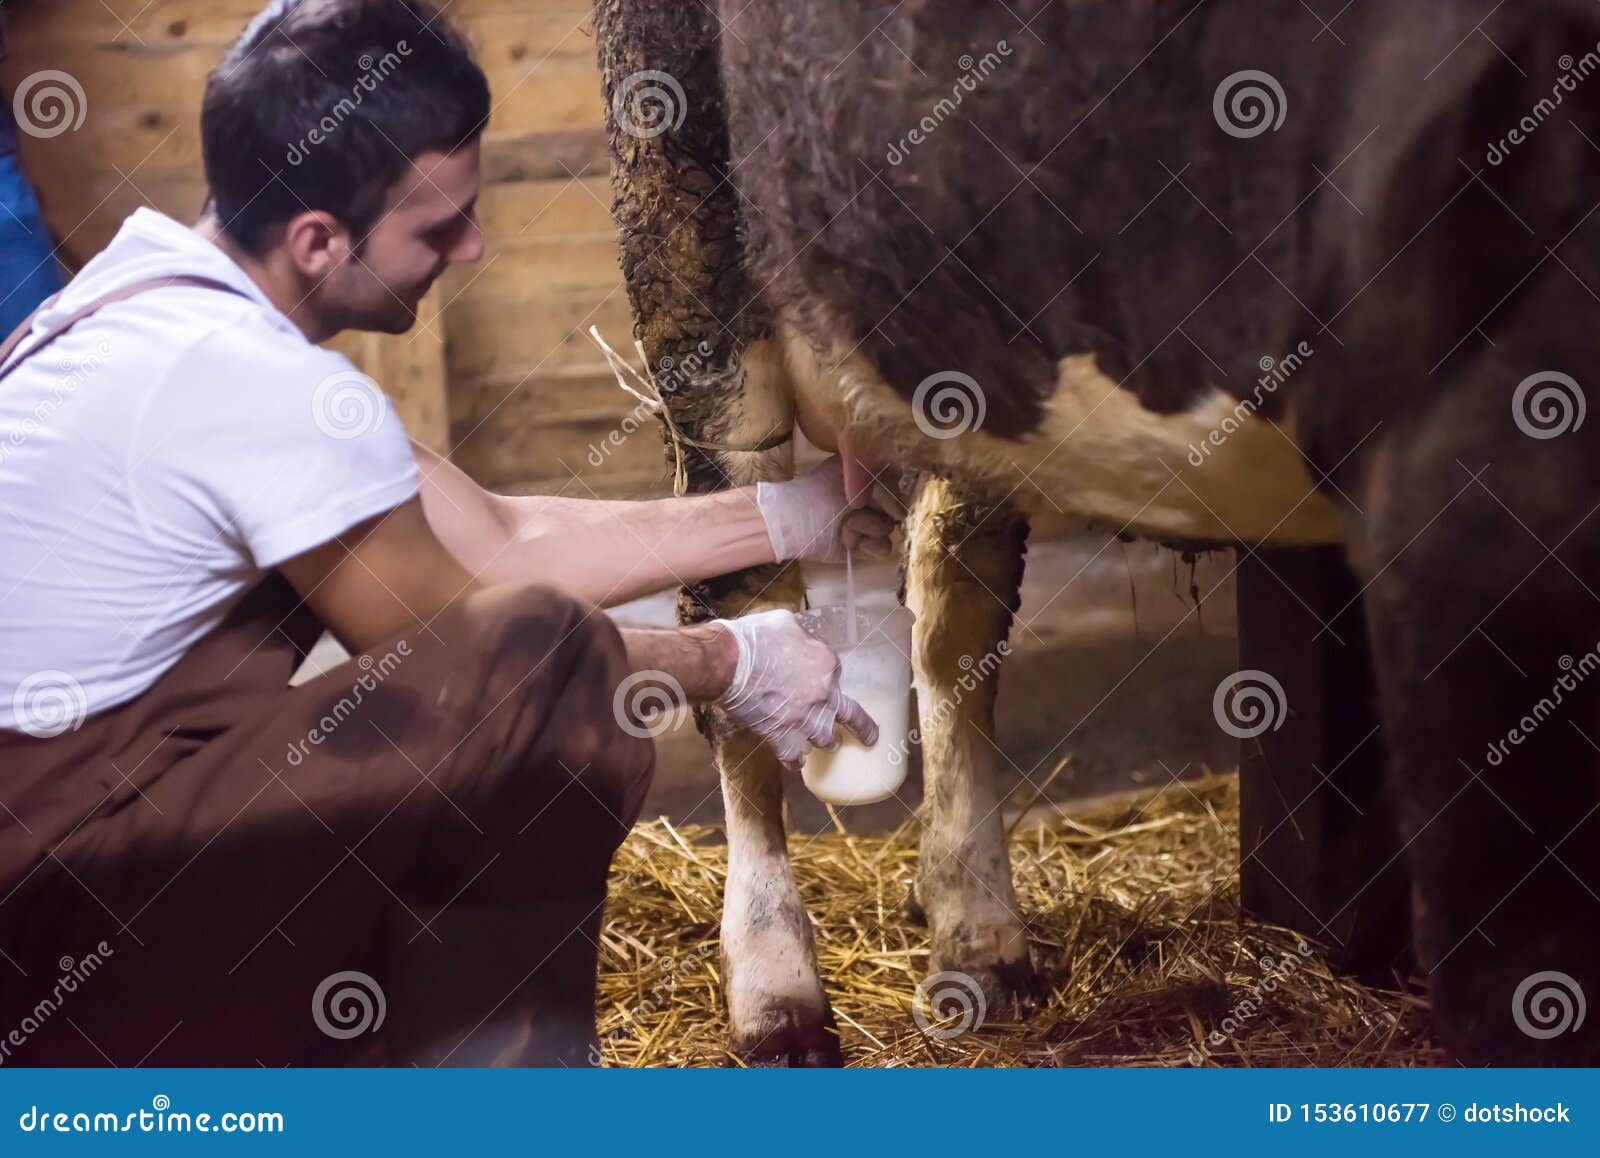 People Milking Cows